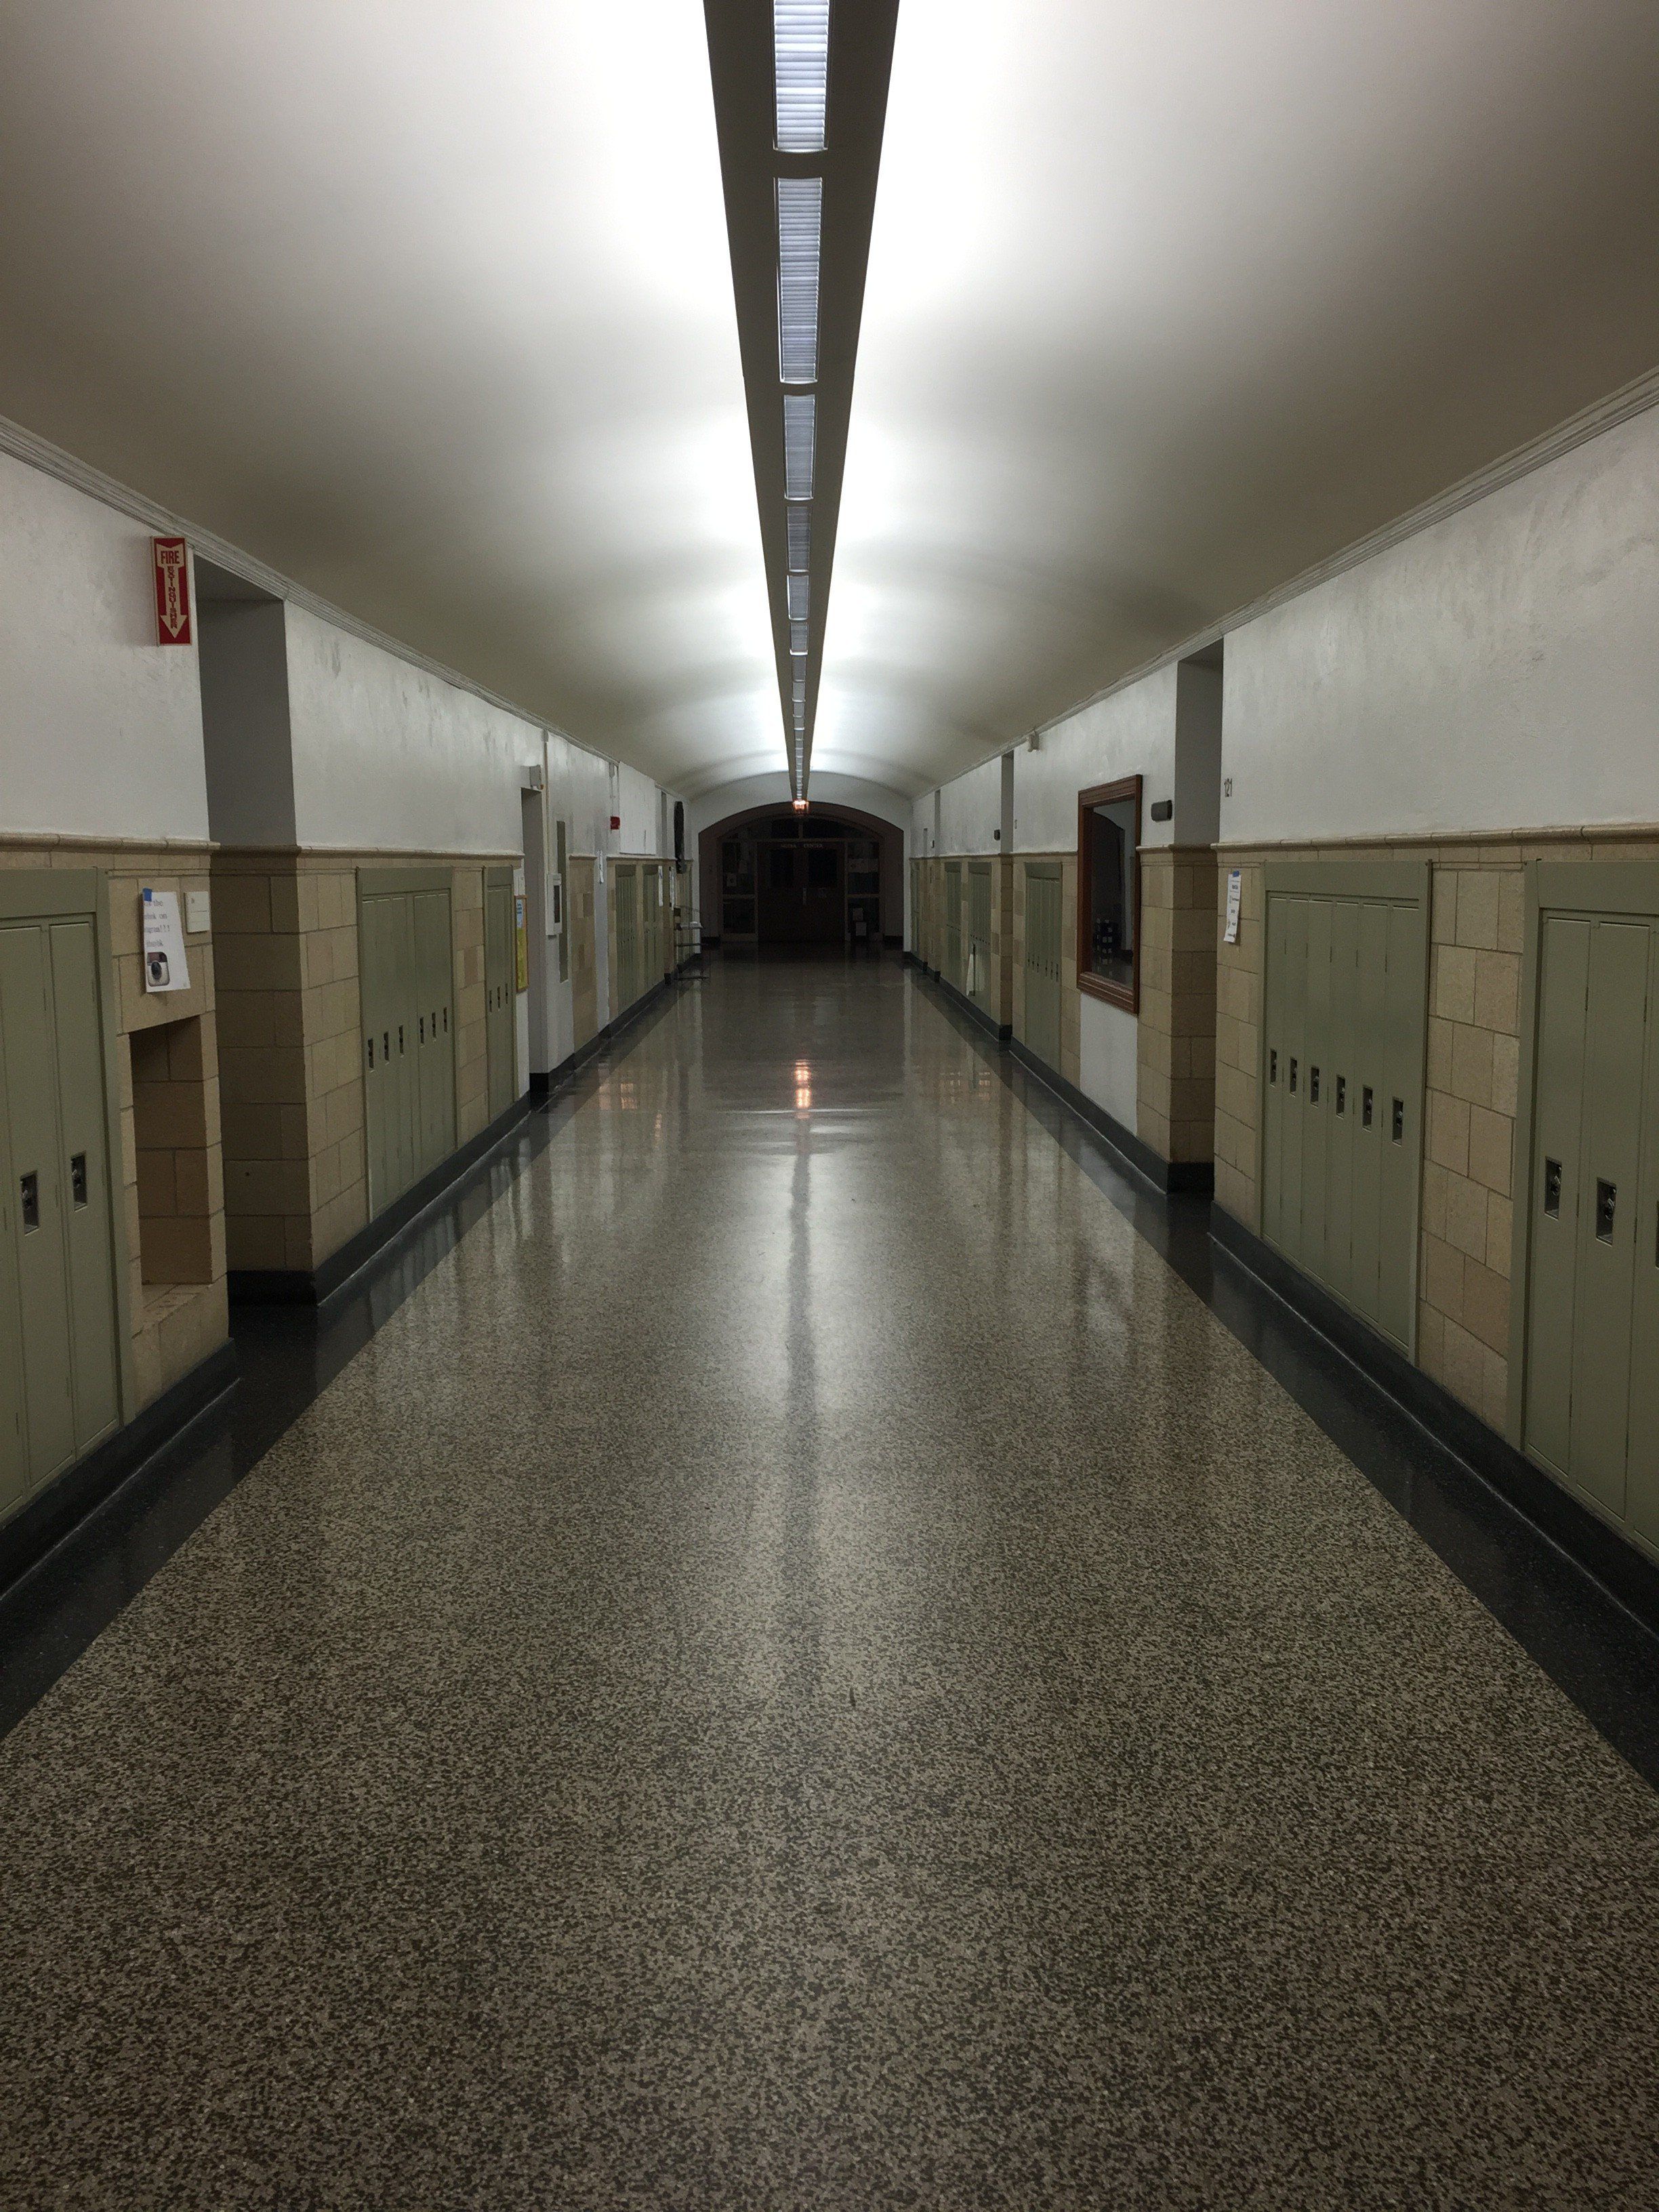 Feelings in Hallways